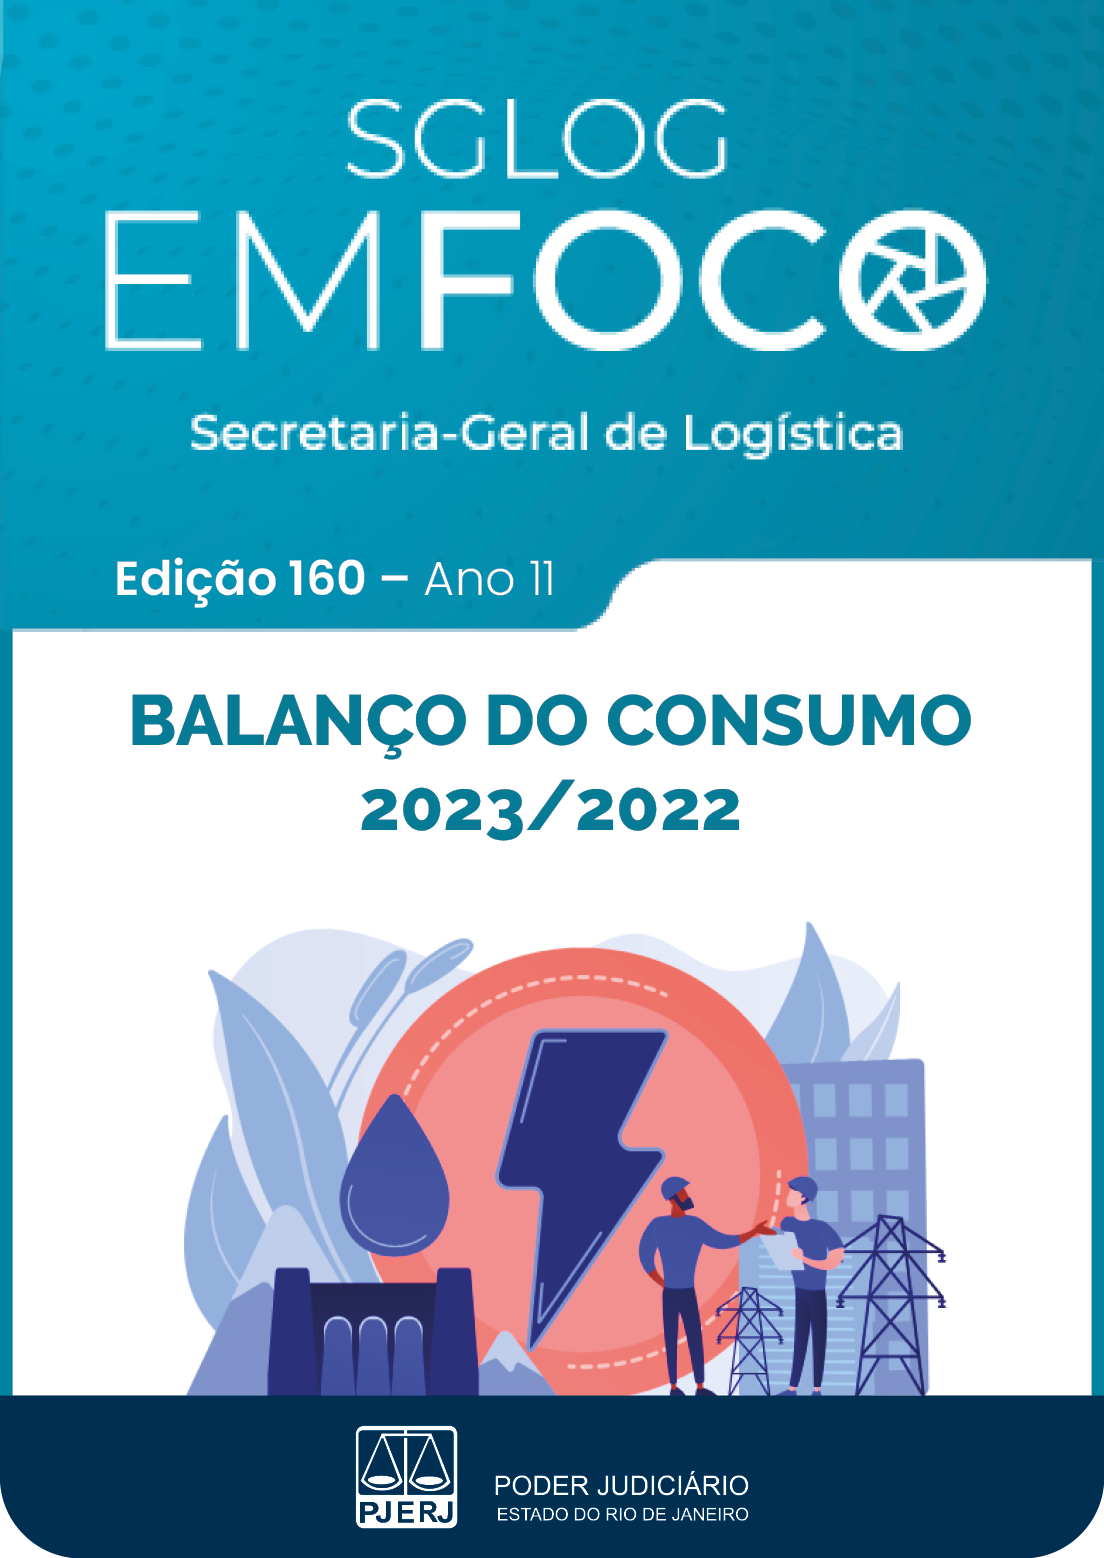 SGLOG EM FOCO - Secretaria-Geral de Logística - Edição 160 - ano 10 - BALANÇO DO CONSUMO 2023/2022